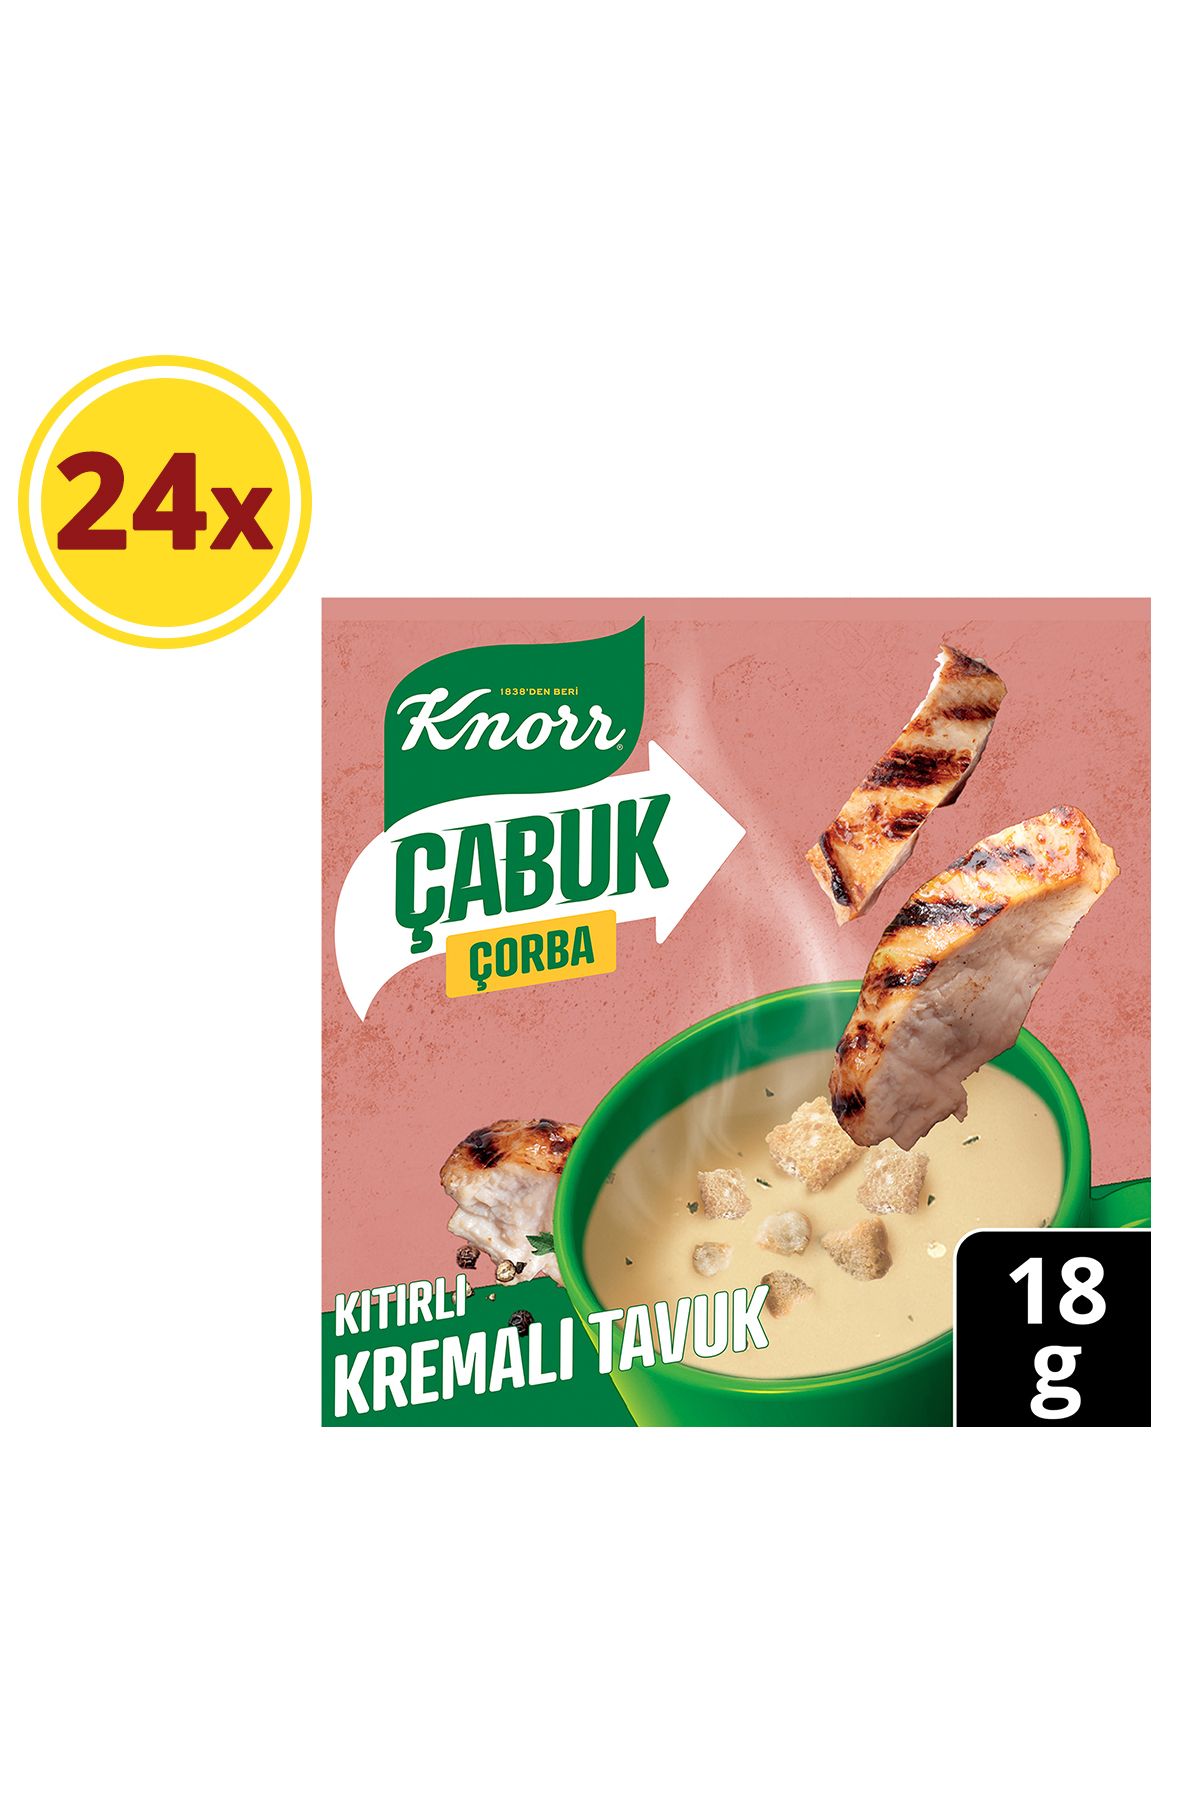 Knorr Kremalı Tavuk Çabuk Çorba 18 gr X 24 Adet